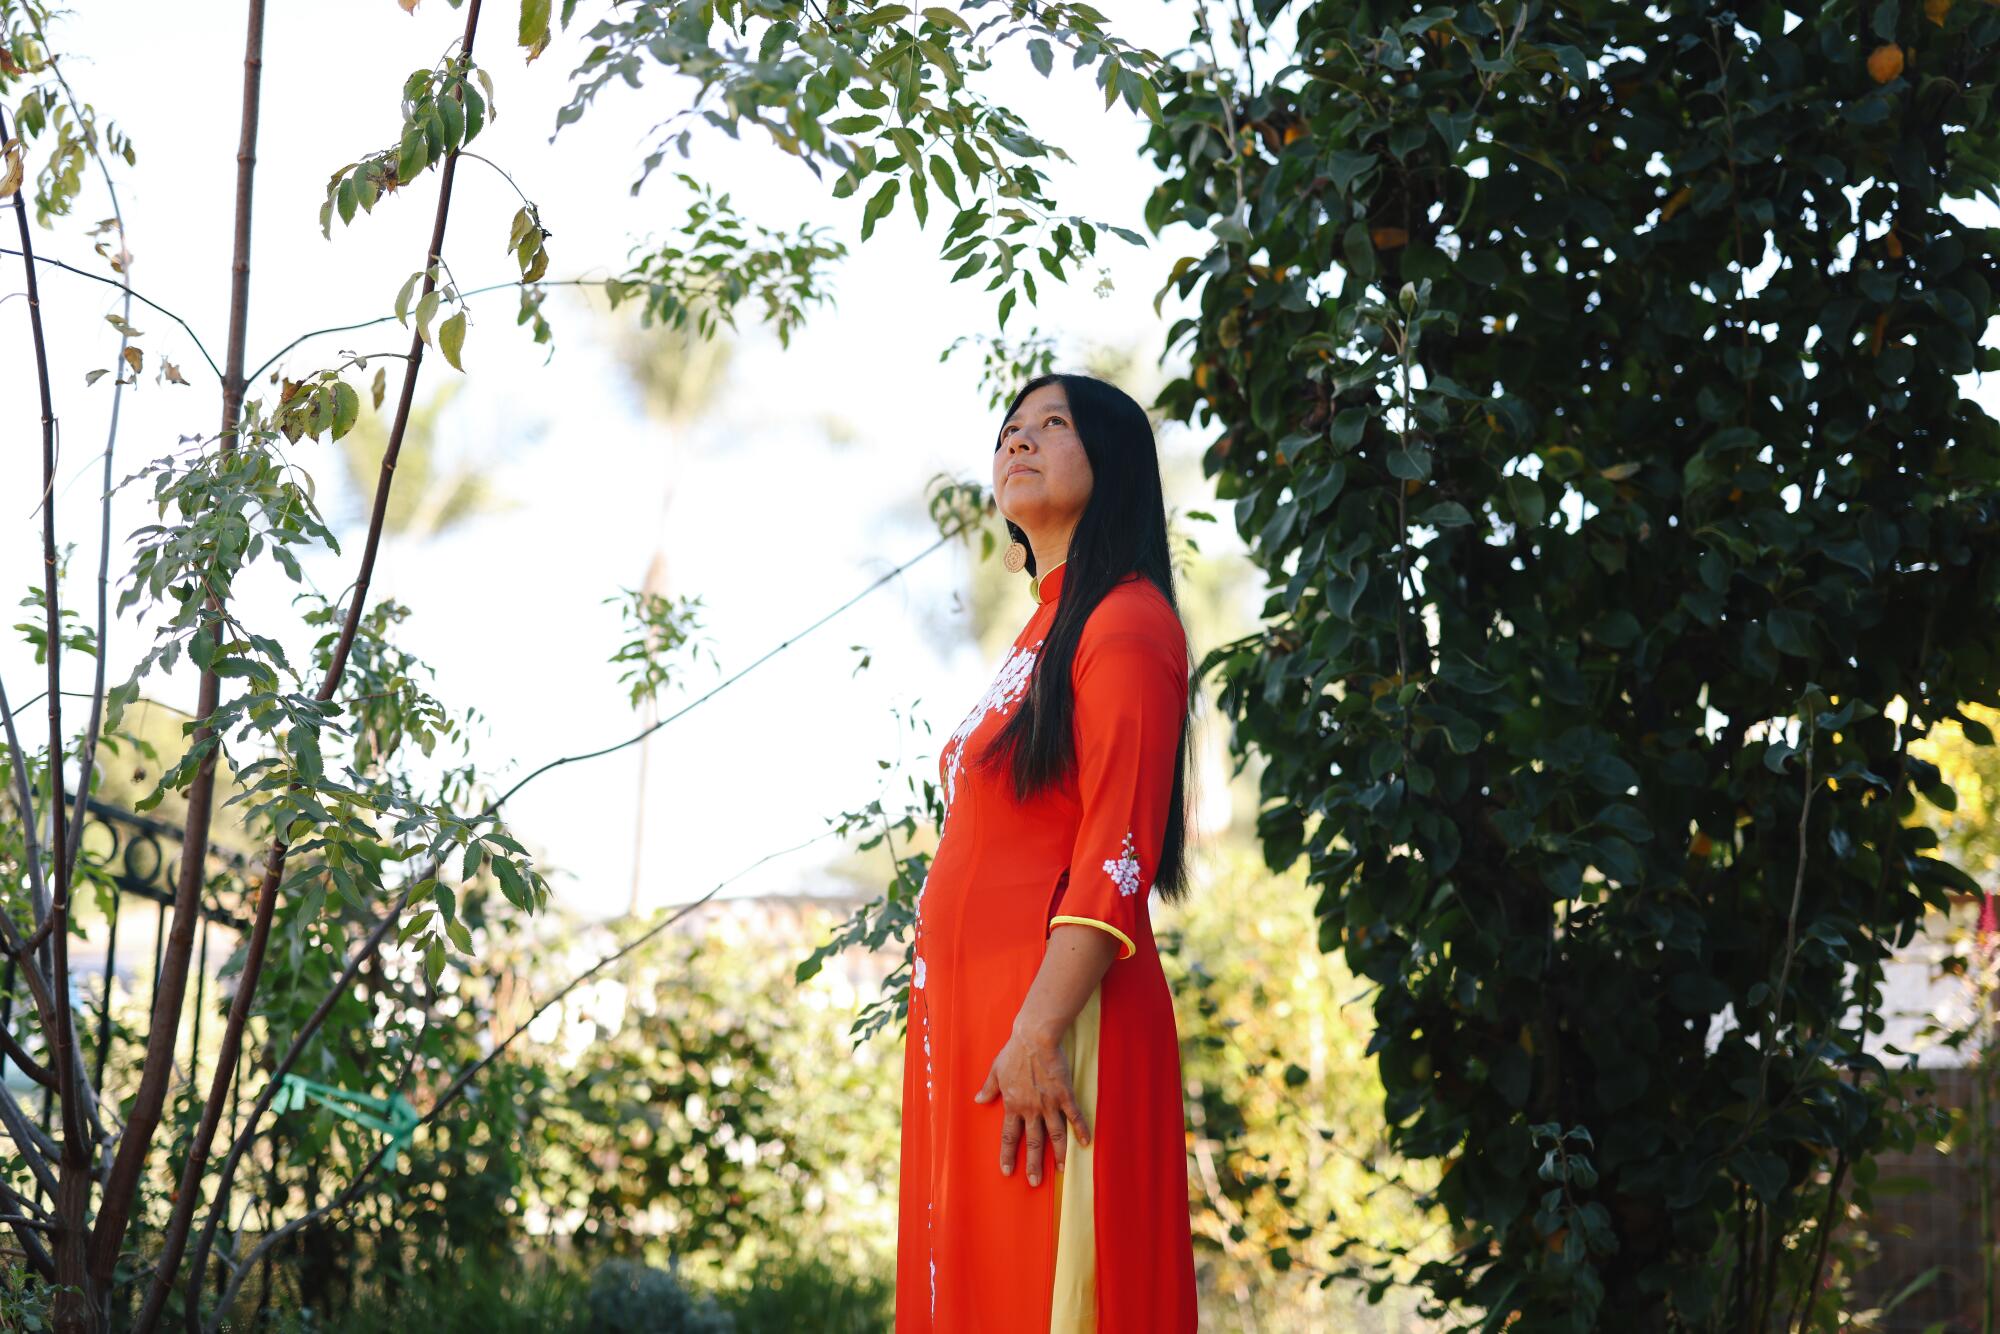 Teresa Mei Chuk em um vestido vermelho brilhante olhando para longe entre as árvores verdes. 